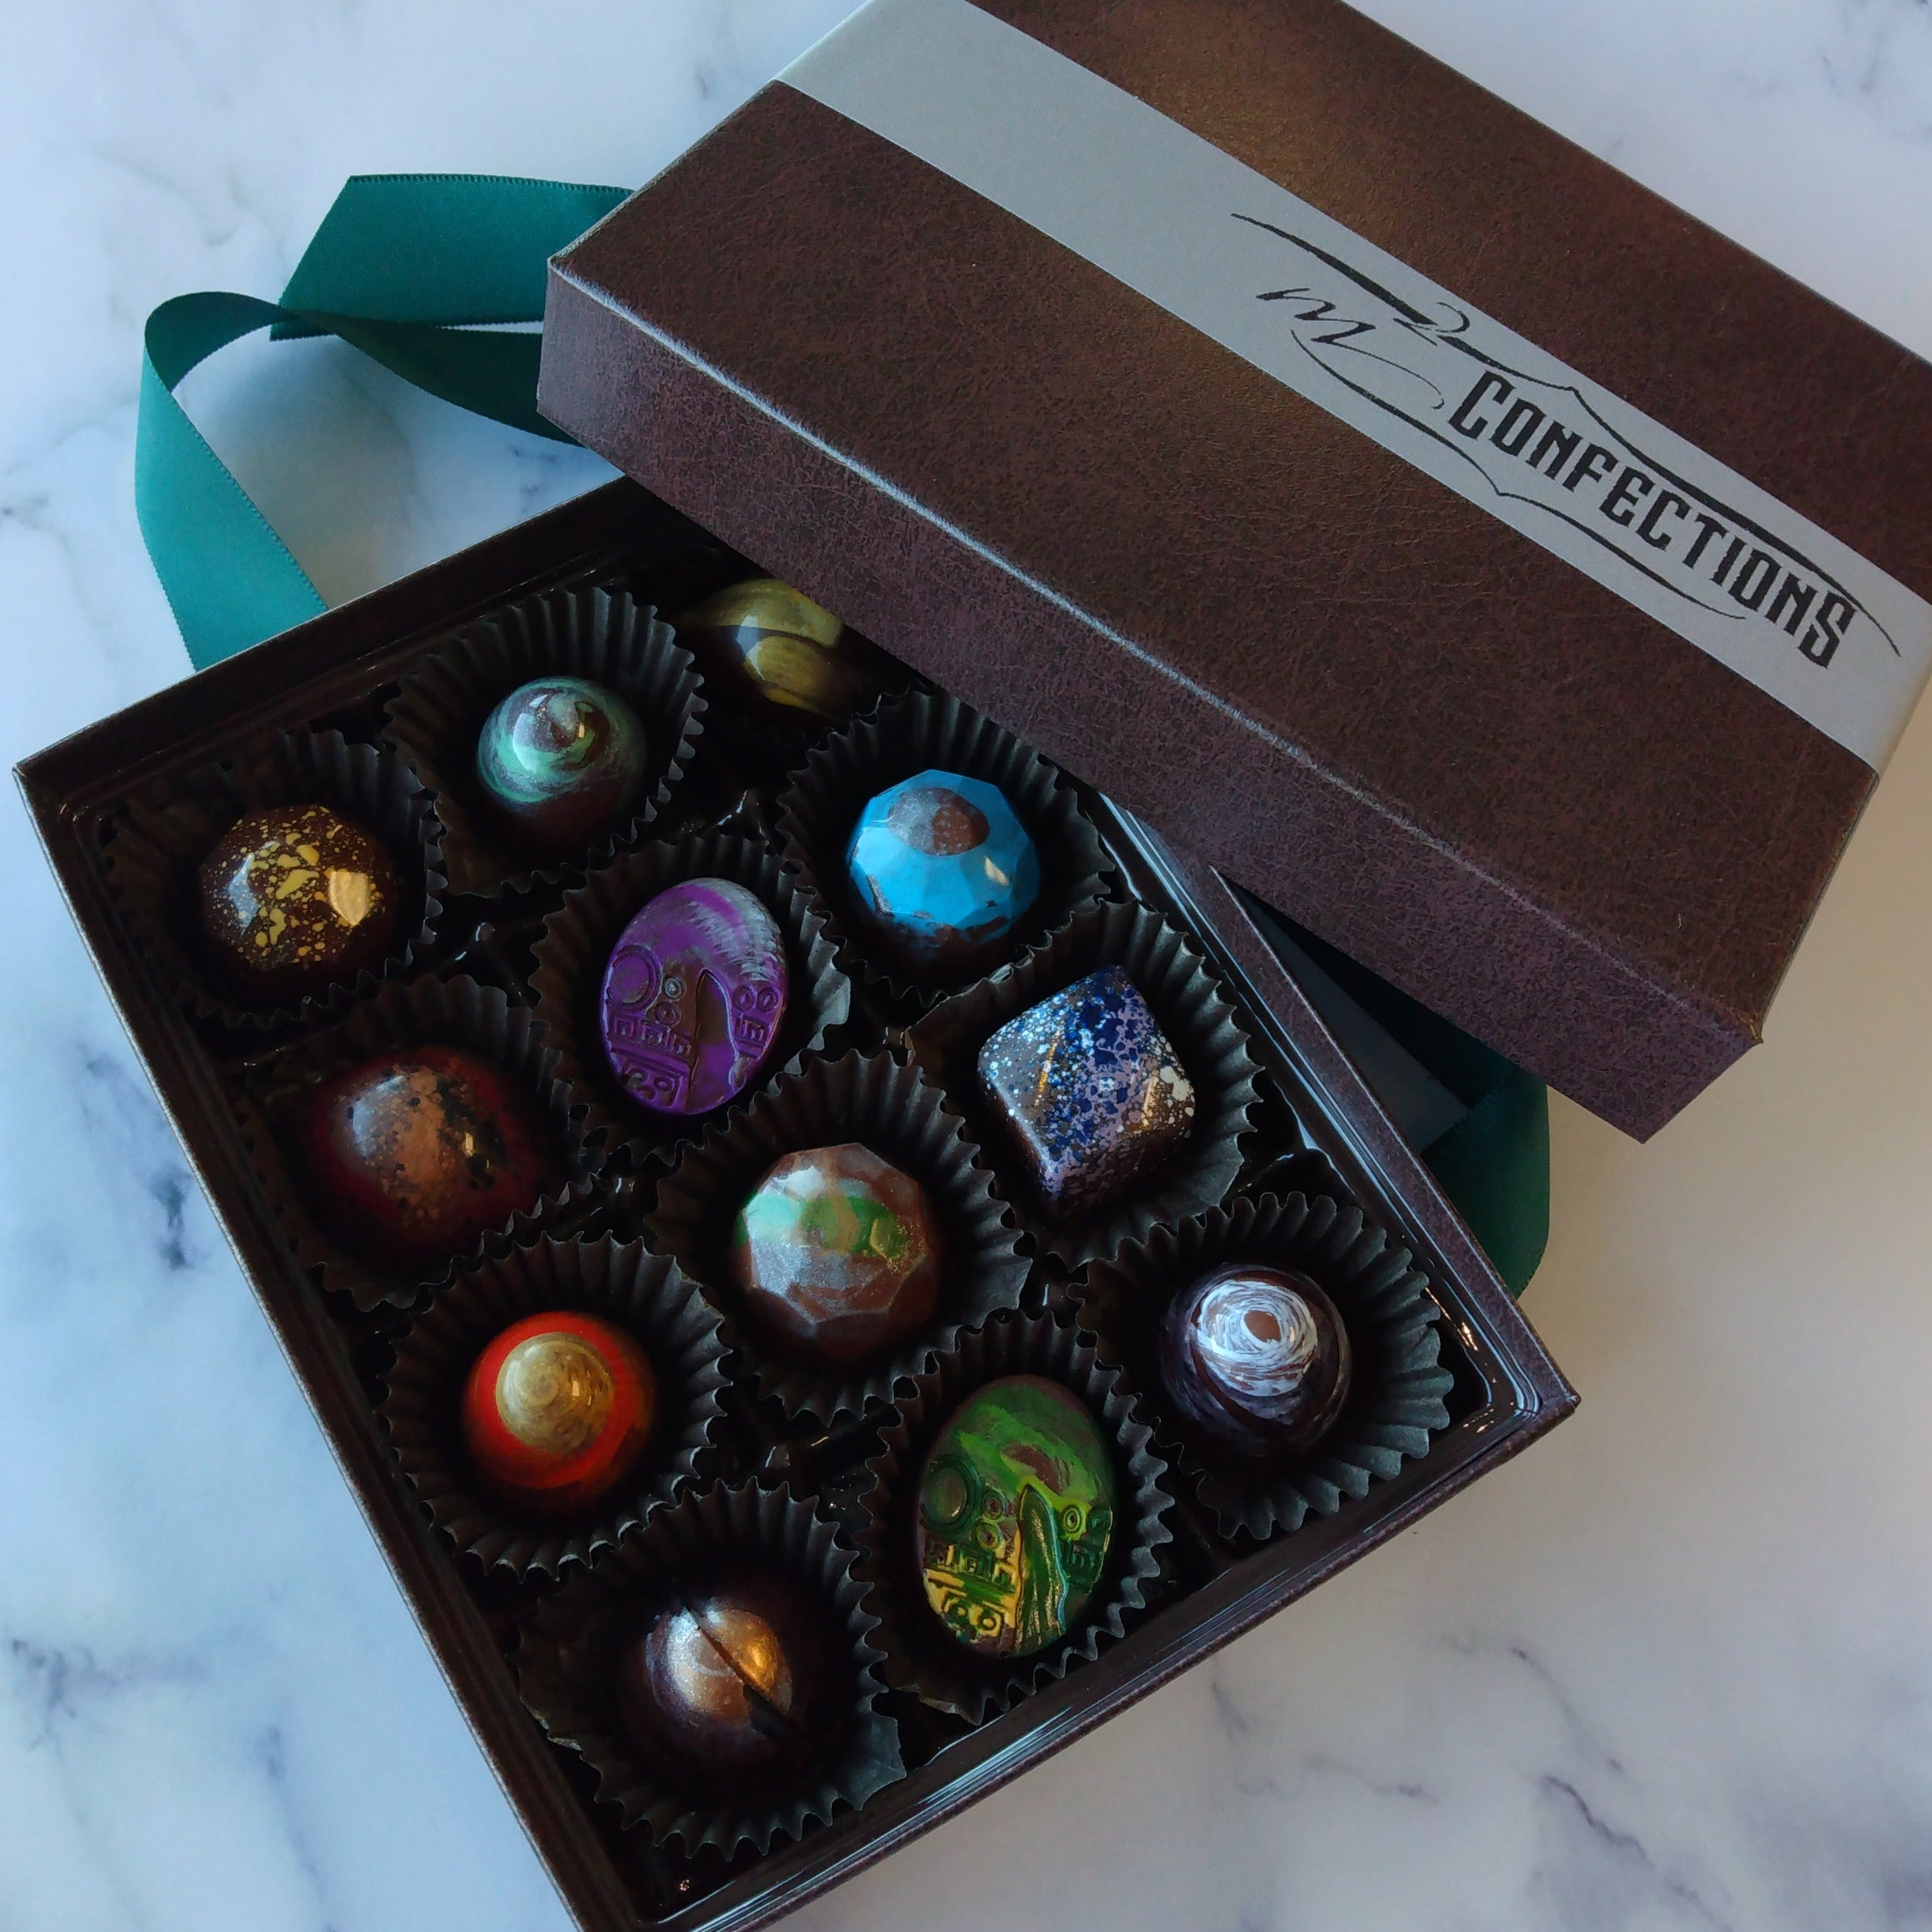 Signature Chocolate Truffles Gift Box: Chocolate Gifts